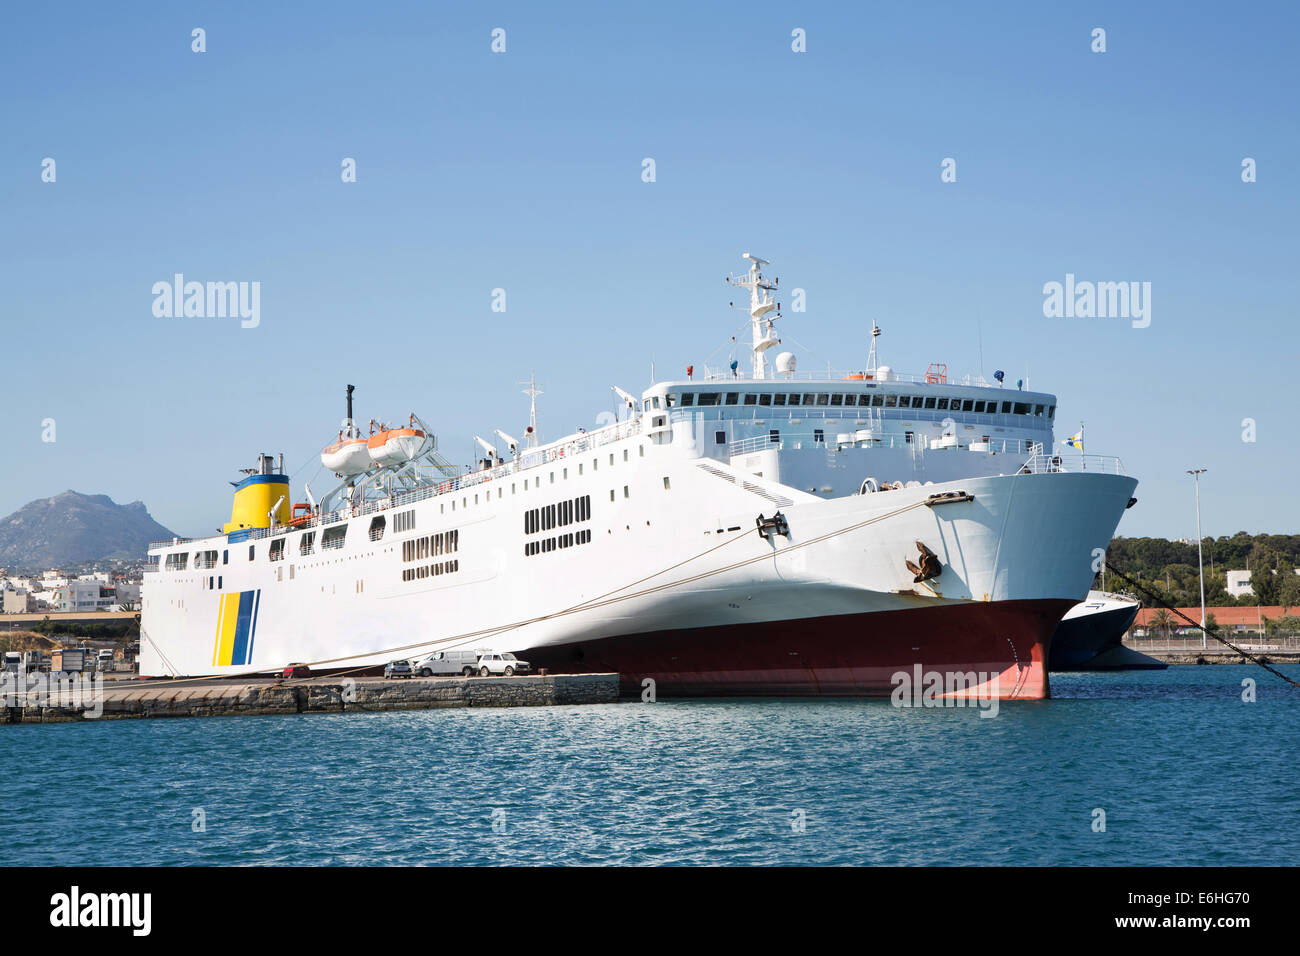 Groß und große Fähre Schiff oder Ladung Schiff im Hafen mit blauem Himmel. Stockfoto